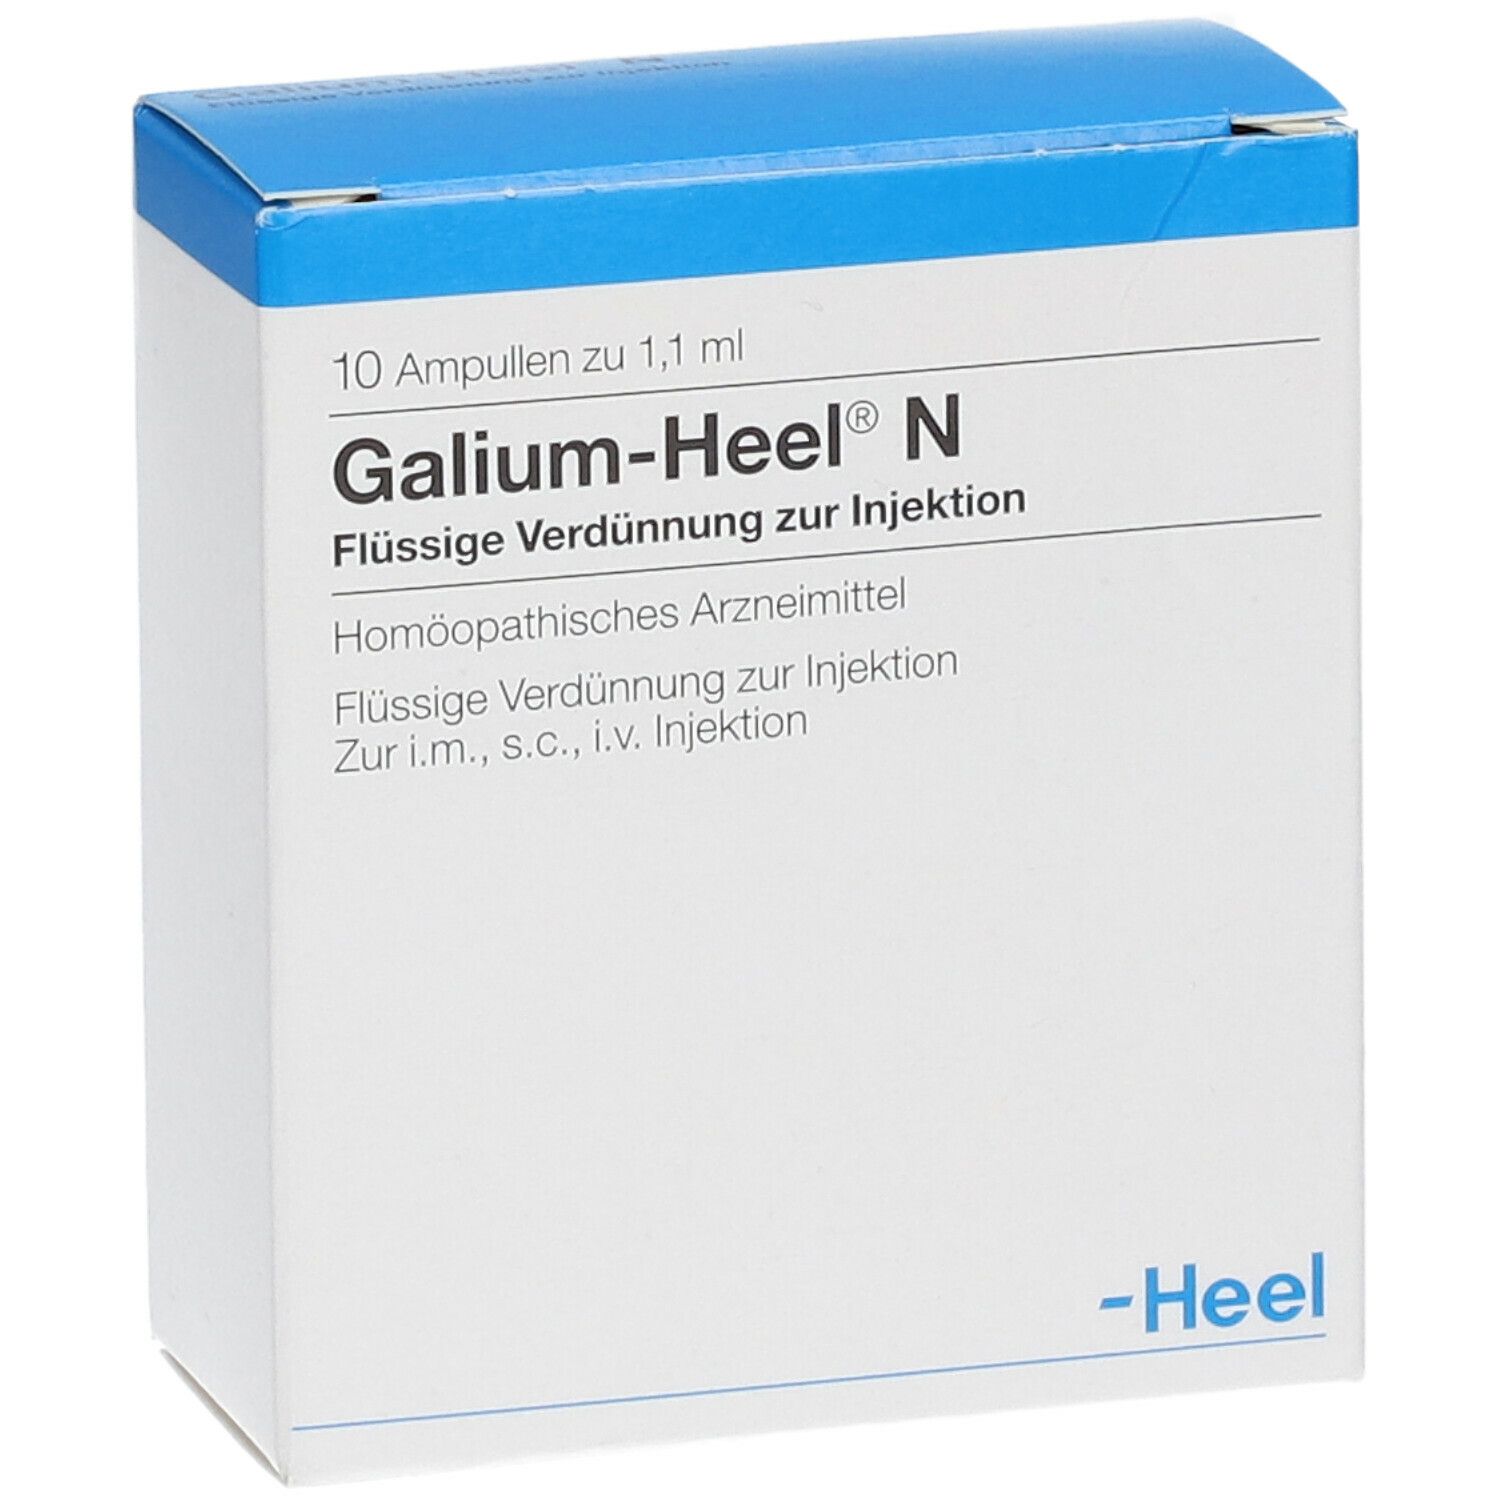 Galium-Heel® N Ampullen